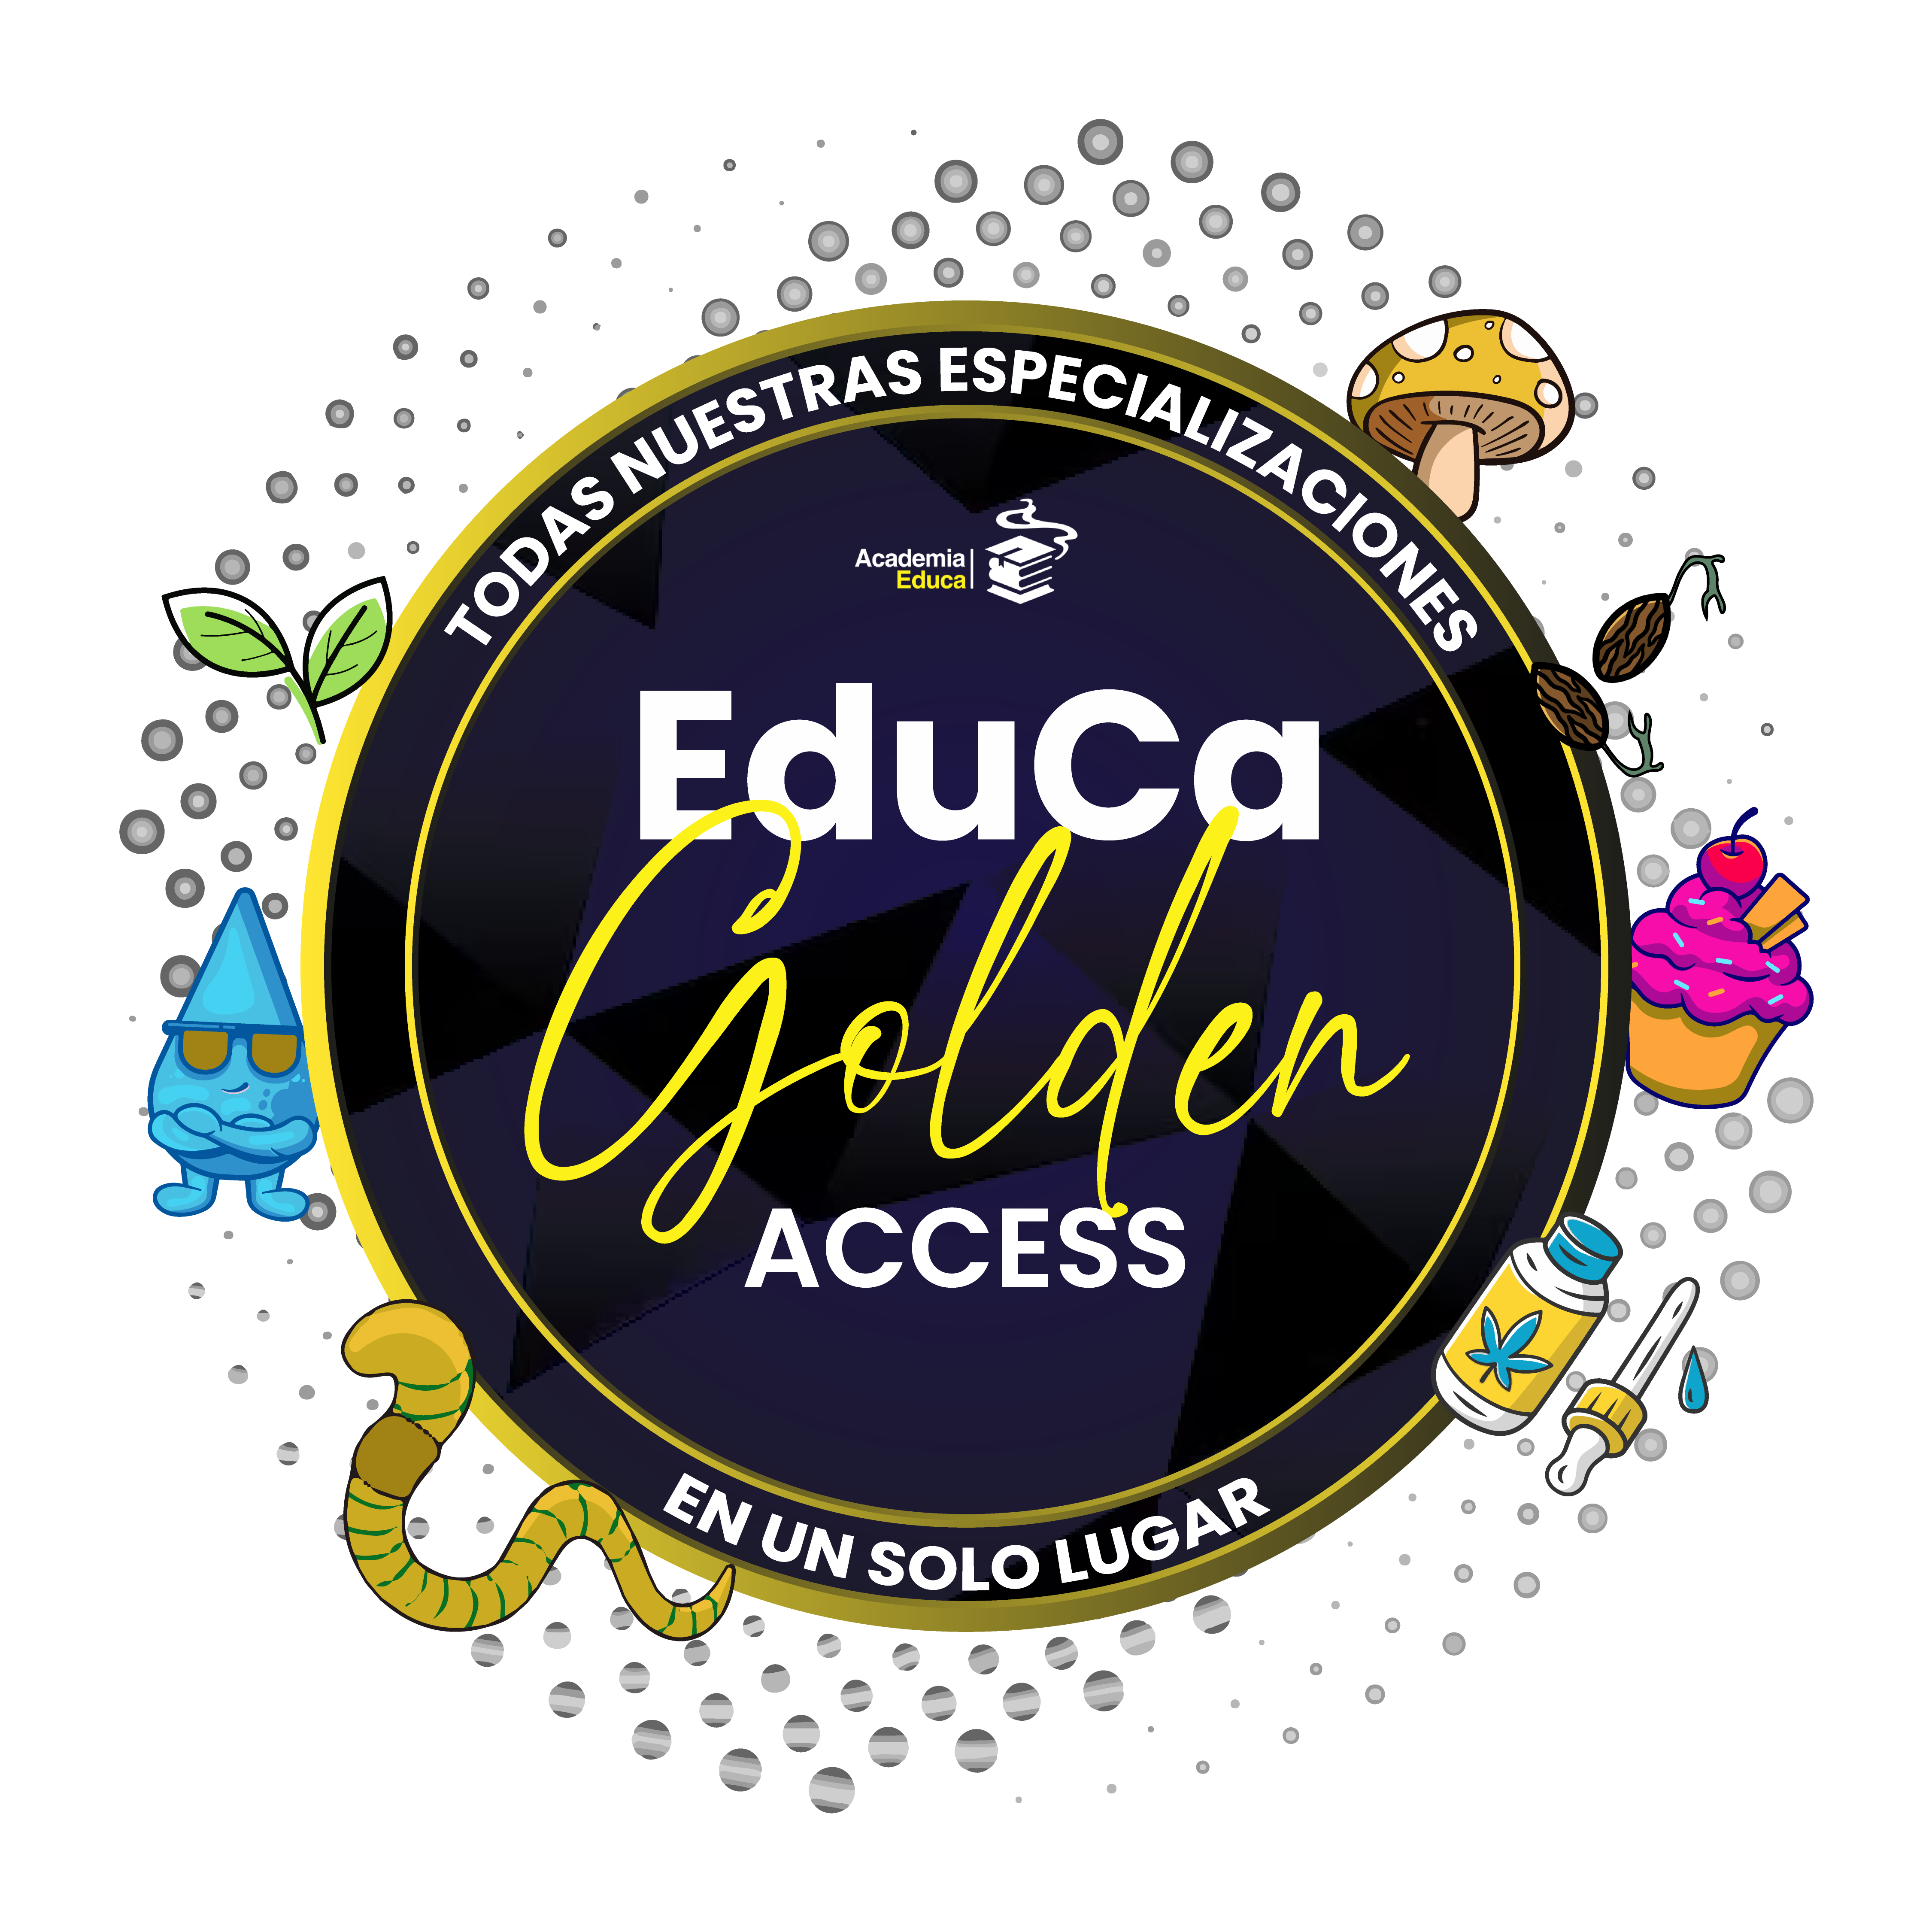 Golden Access: TODAS nuestras especializaciones en 1 solo lugar! Accedé a tu tiempo y de POR VIDA!